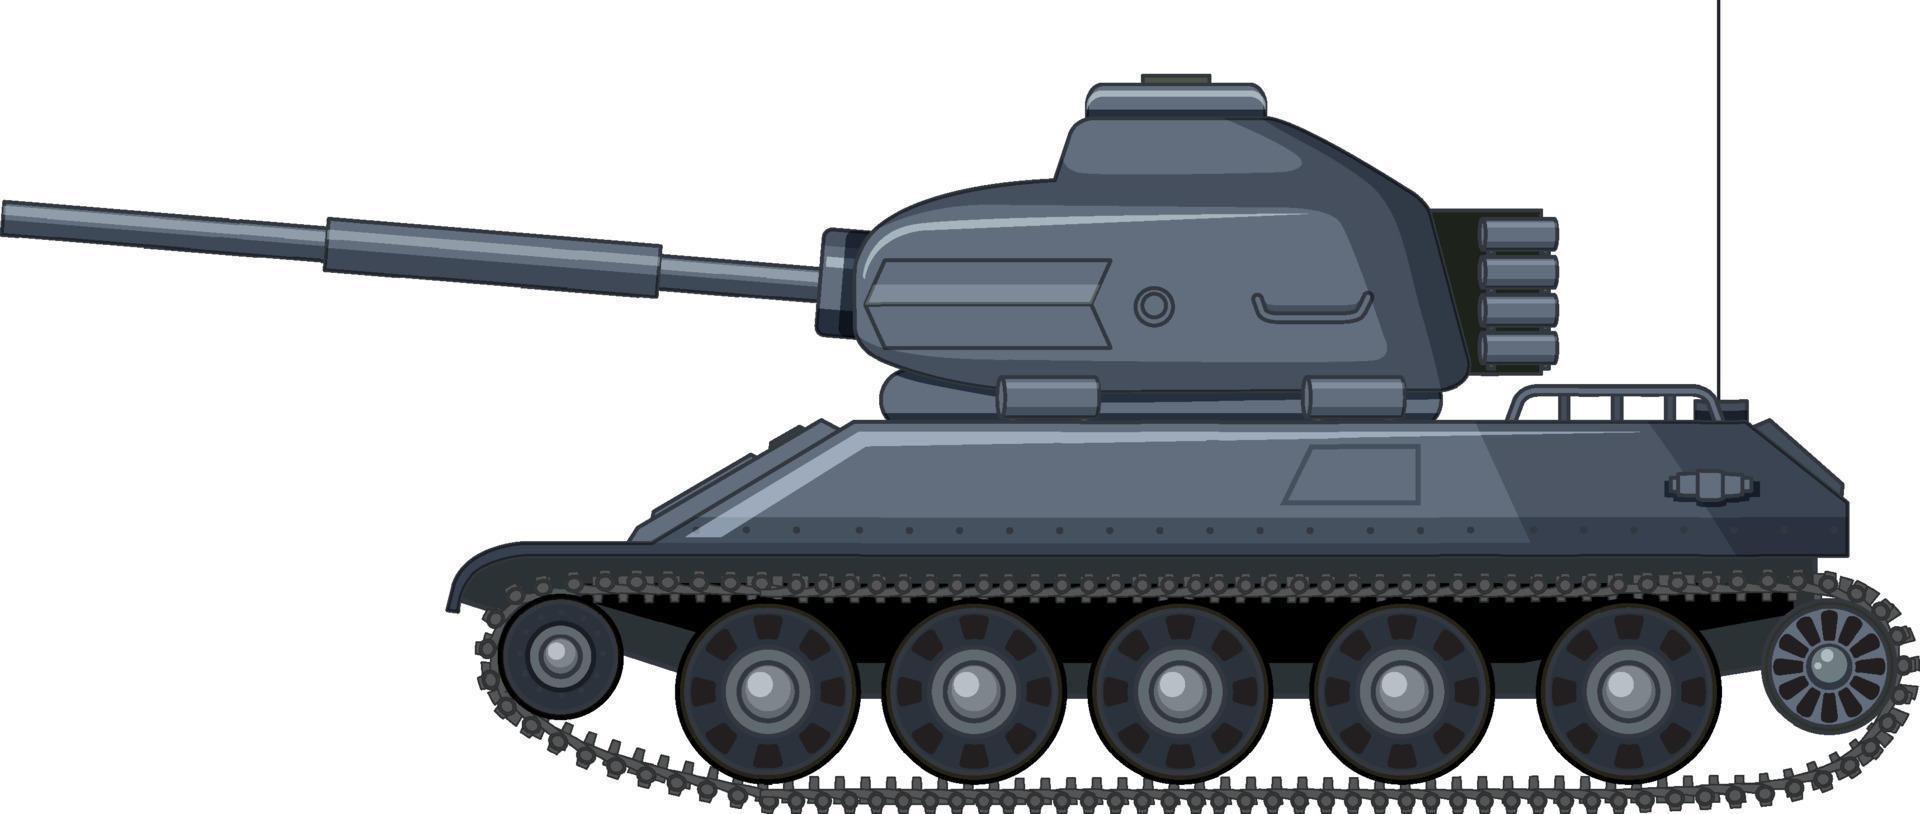 militärischer Kampfpanzer auf weißem Hintergrund vektor